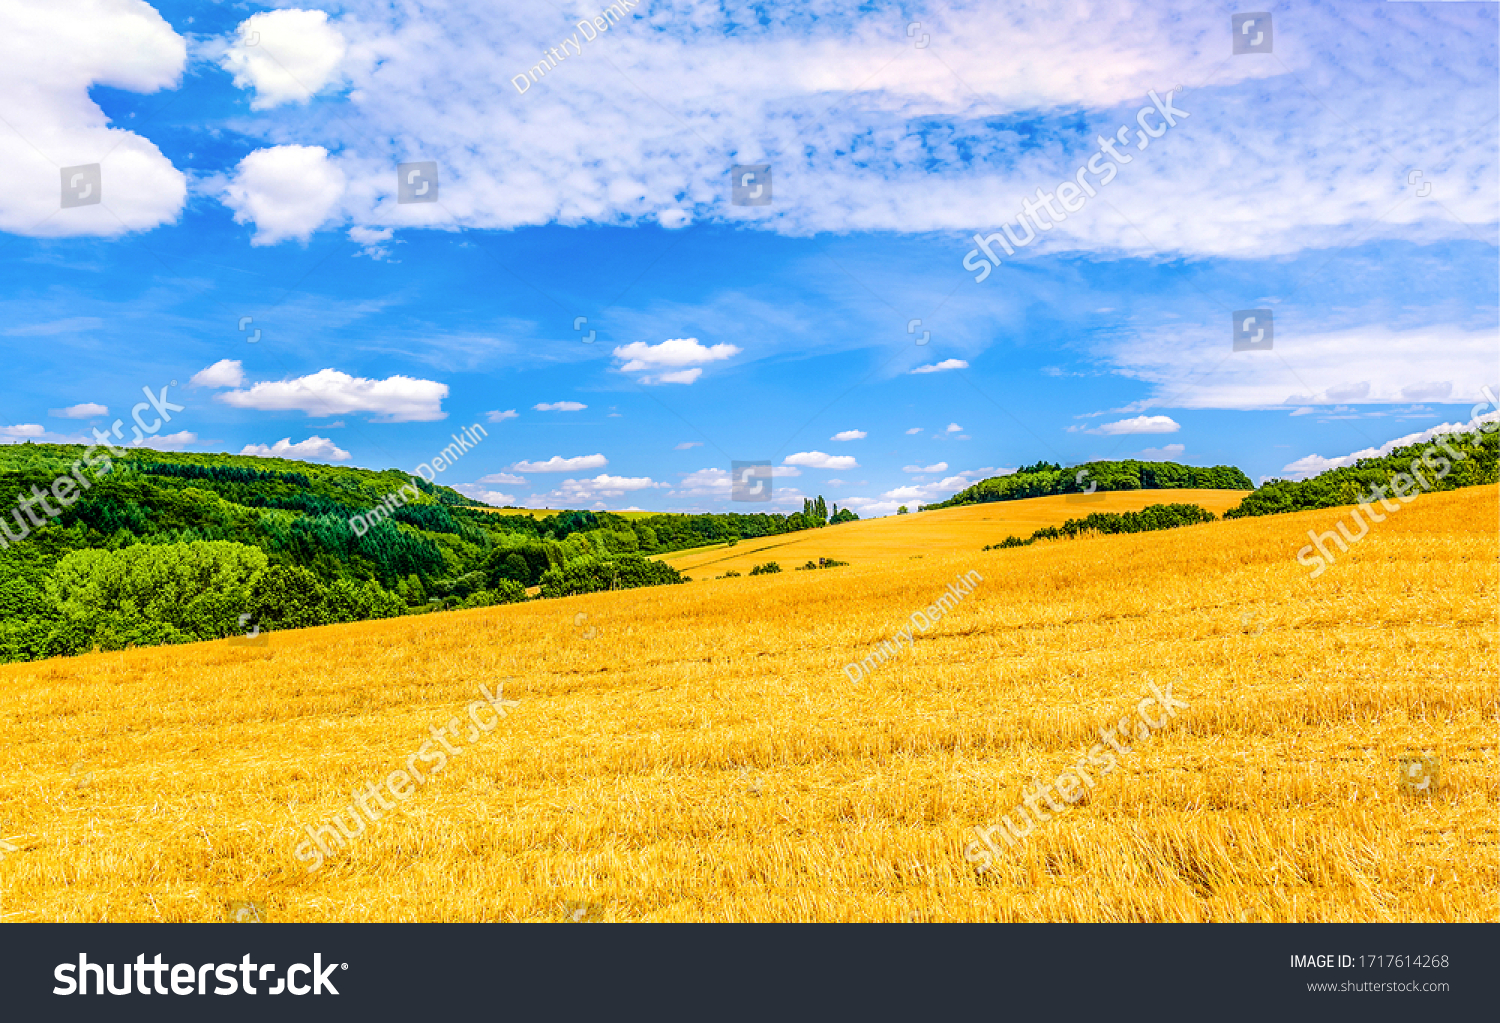 Yellow wheat field farm landscape #1717614268